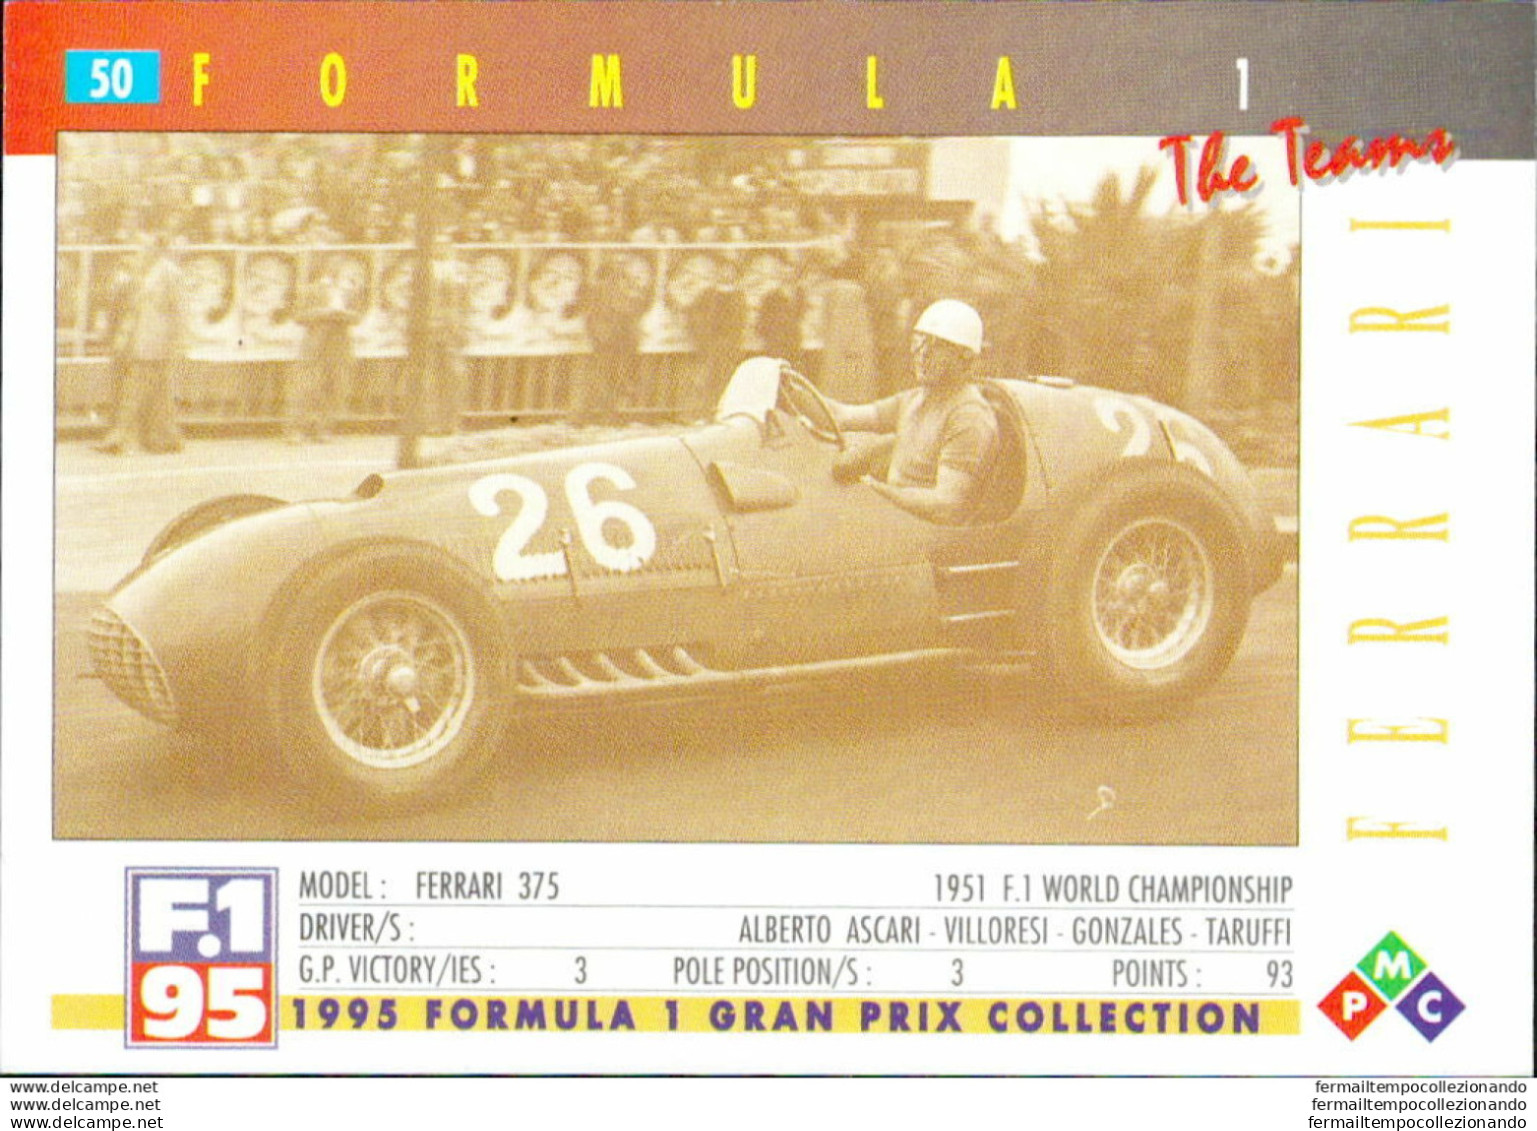 Bh50 1995 Formula 1 Gran Prix Collection Card Ferrari Team N 50 - Catalogues